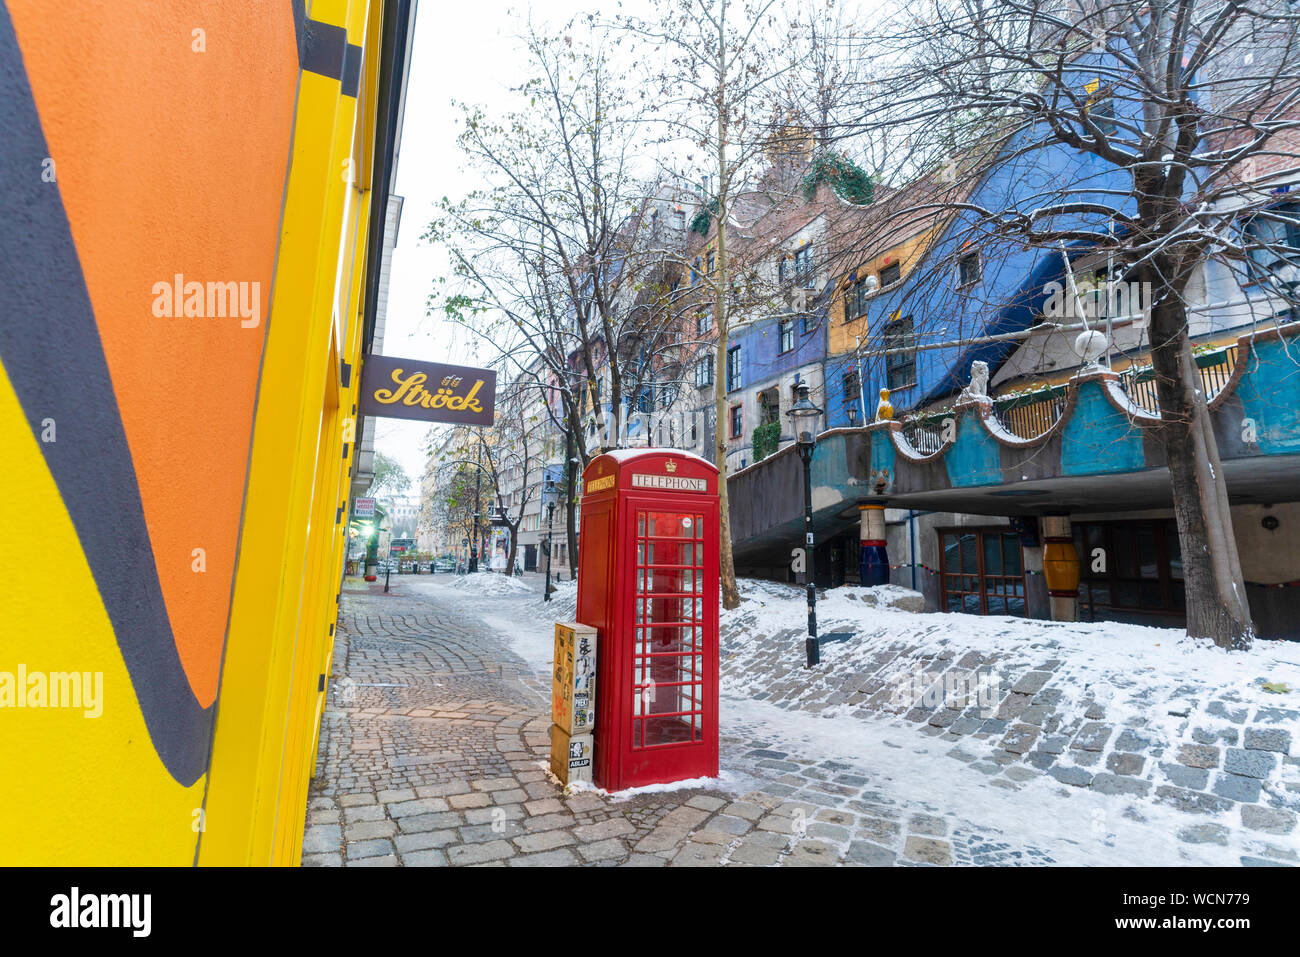 British Red phone box dans le pittoresque village de Hundertwasser, Hundertwasserhaus, Vienne, Autriche Banque D'Images